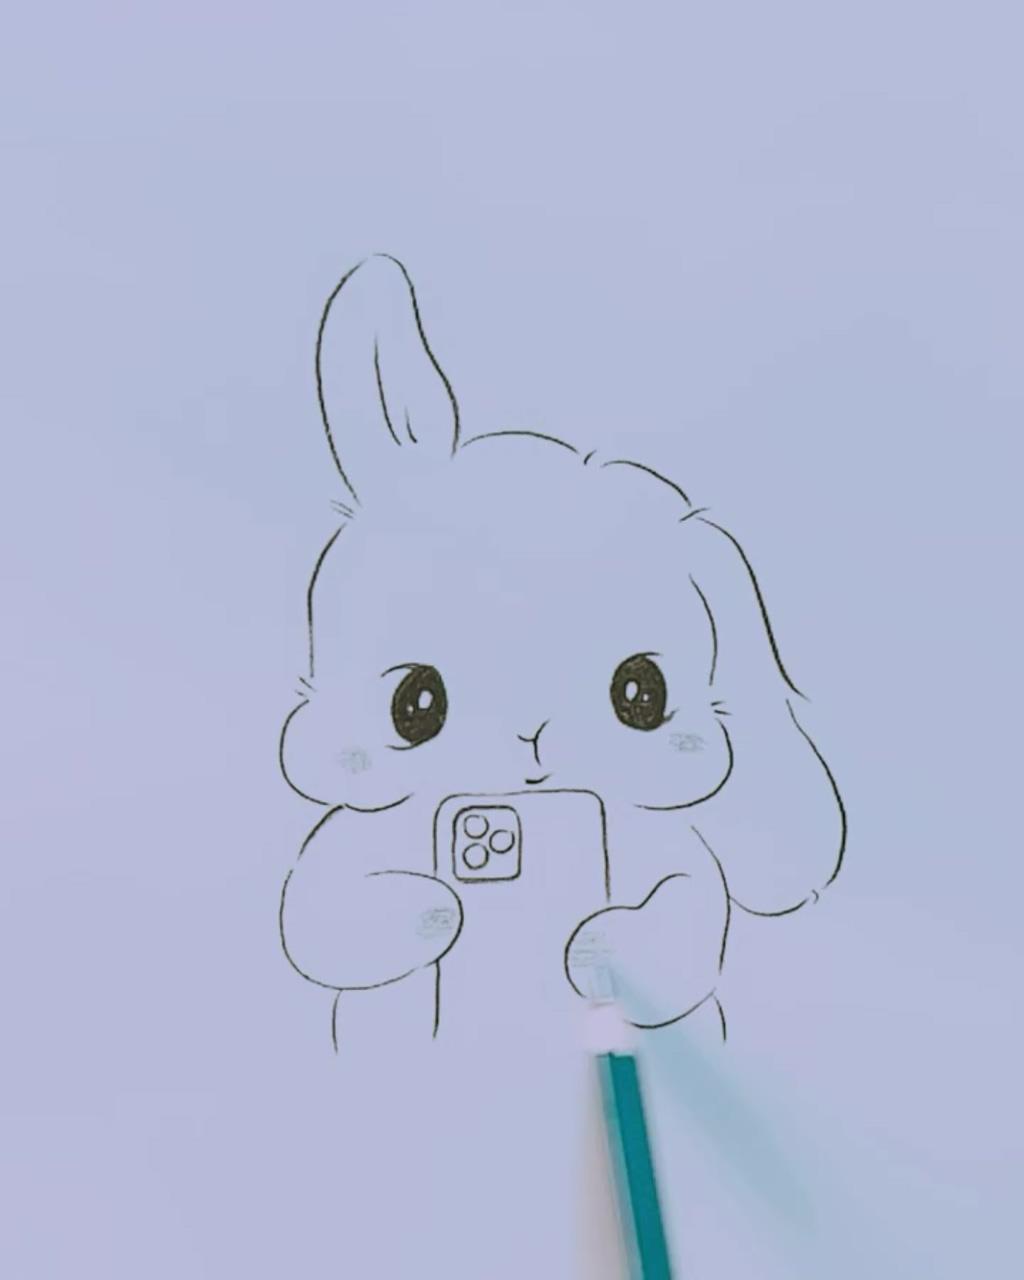 Rabbit drawing; rabbit drawing